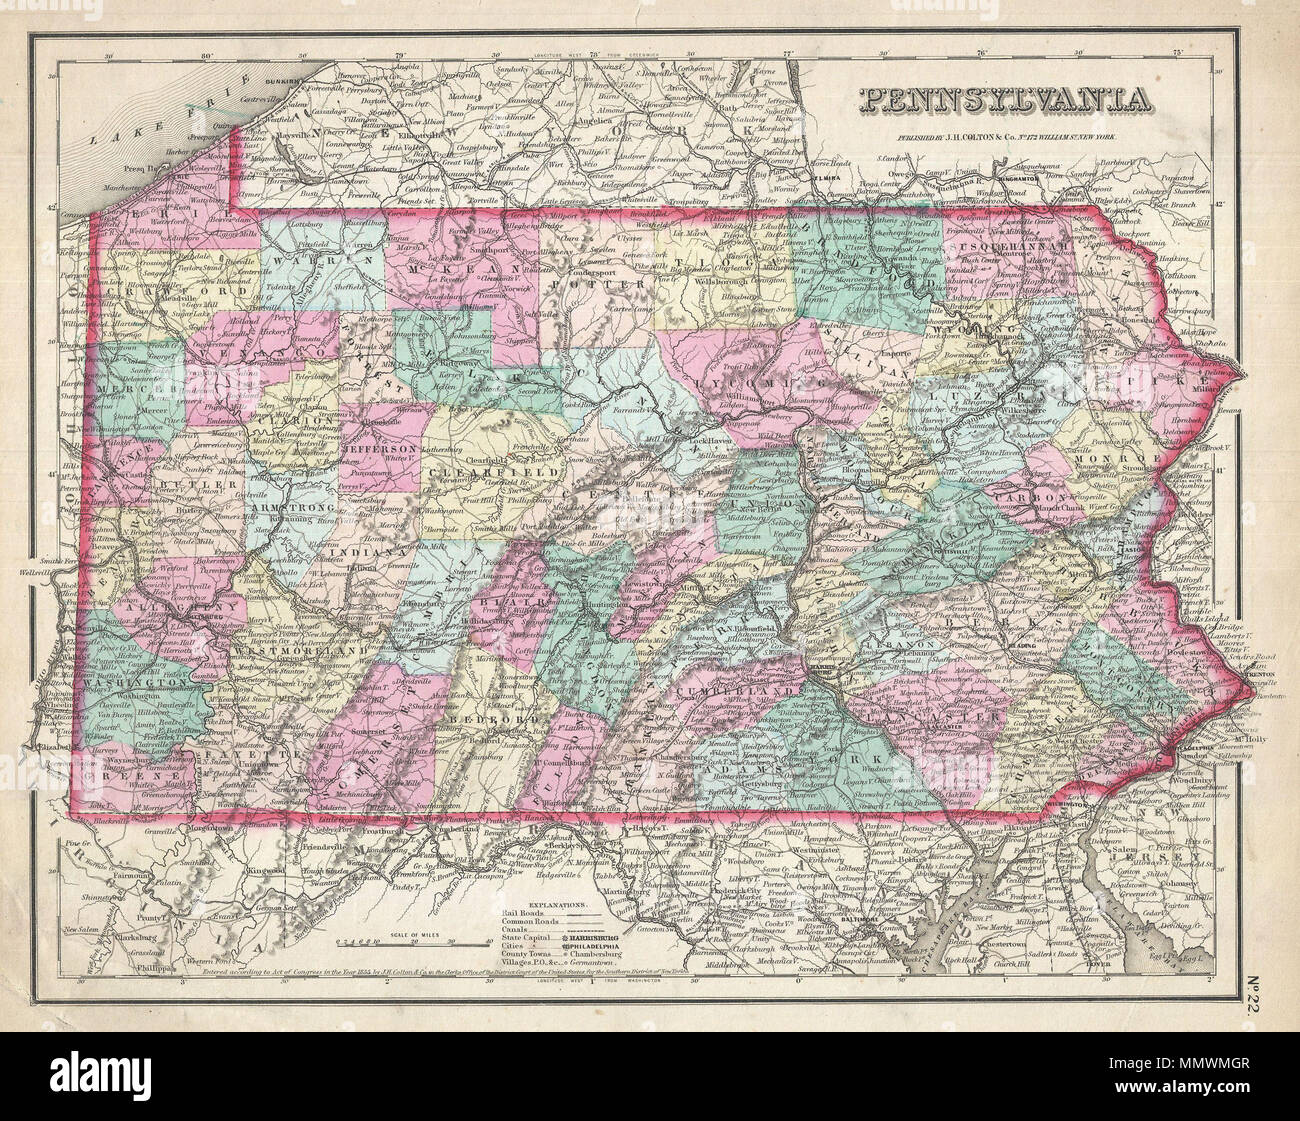 . Inglese: un bel 1857 Esempio di Colton la mappa di Pennsylvania. Copre tutto lo stato come pure le parti adiacenti di New York, Maryland e New Jersey. Come la maggior parte di Colton è stato mappe, questa mappa è in gran parte derivata da una parete precedente mappa del Nord America prodotta da Colton e D. Griffing Johnson. Colton identifica varie città, fortezze, fiumi, Rapids, guadi, e un assortimento di ulteriori dettagli topografici. Mappa è mano colorati in rosa, verde, giallo e blu pastello per definire county e confini dello stato. Dalla rara edizione senza confini di Colton del Atlante. Datata e copyr Foto Stock